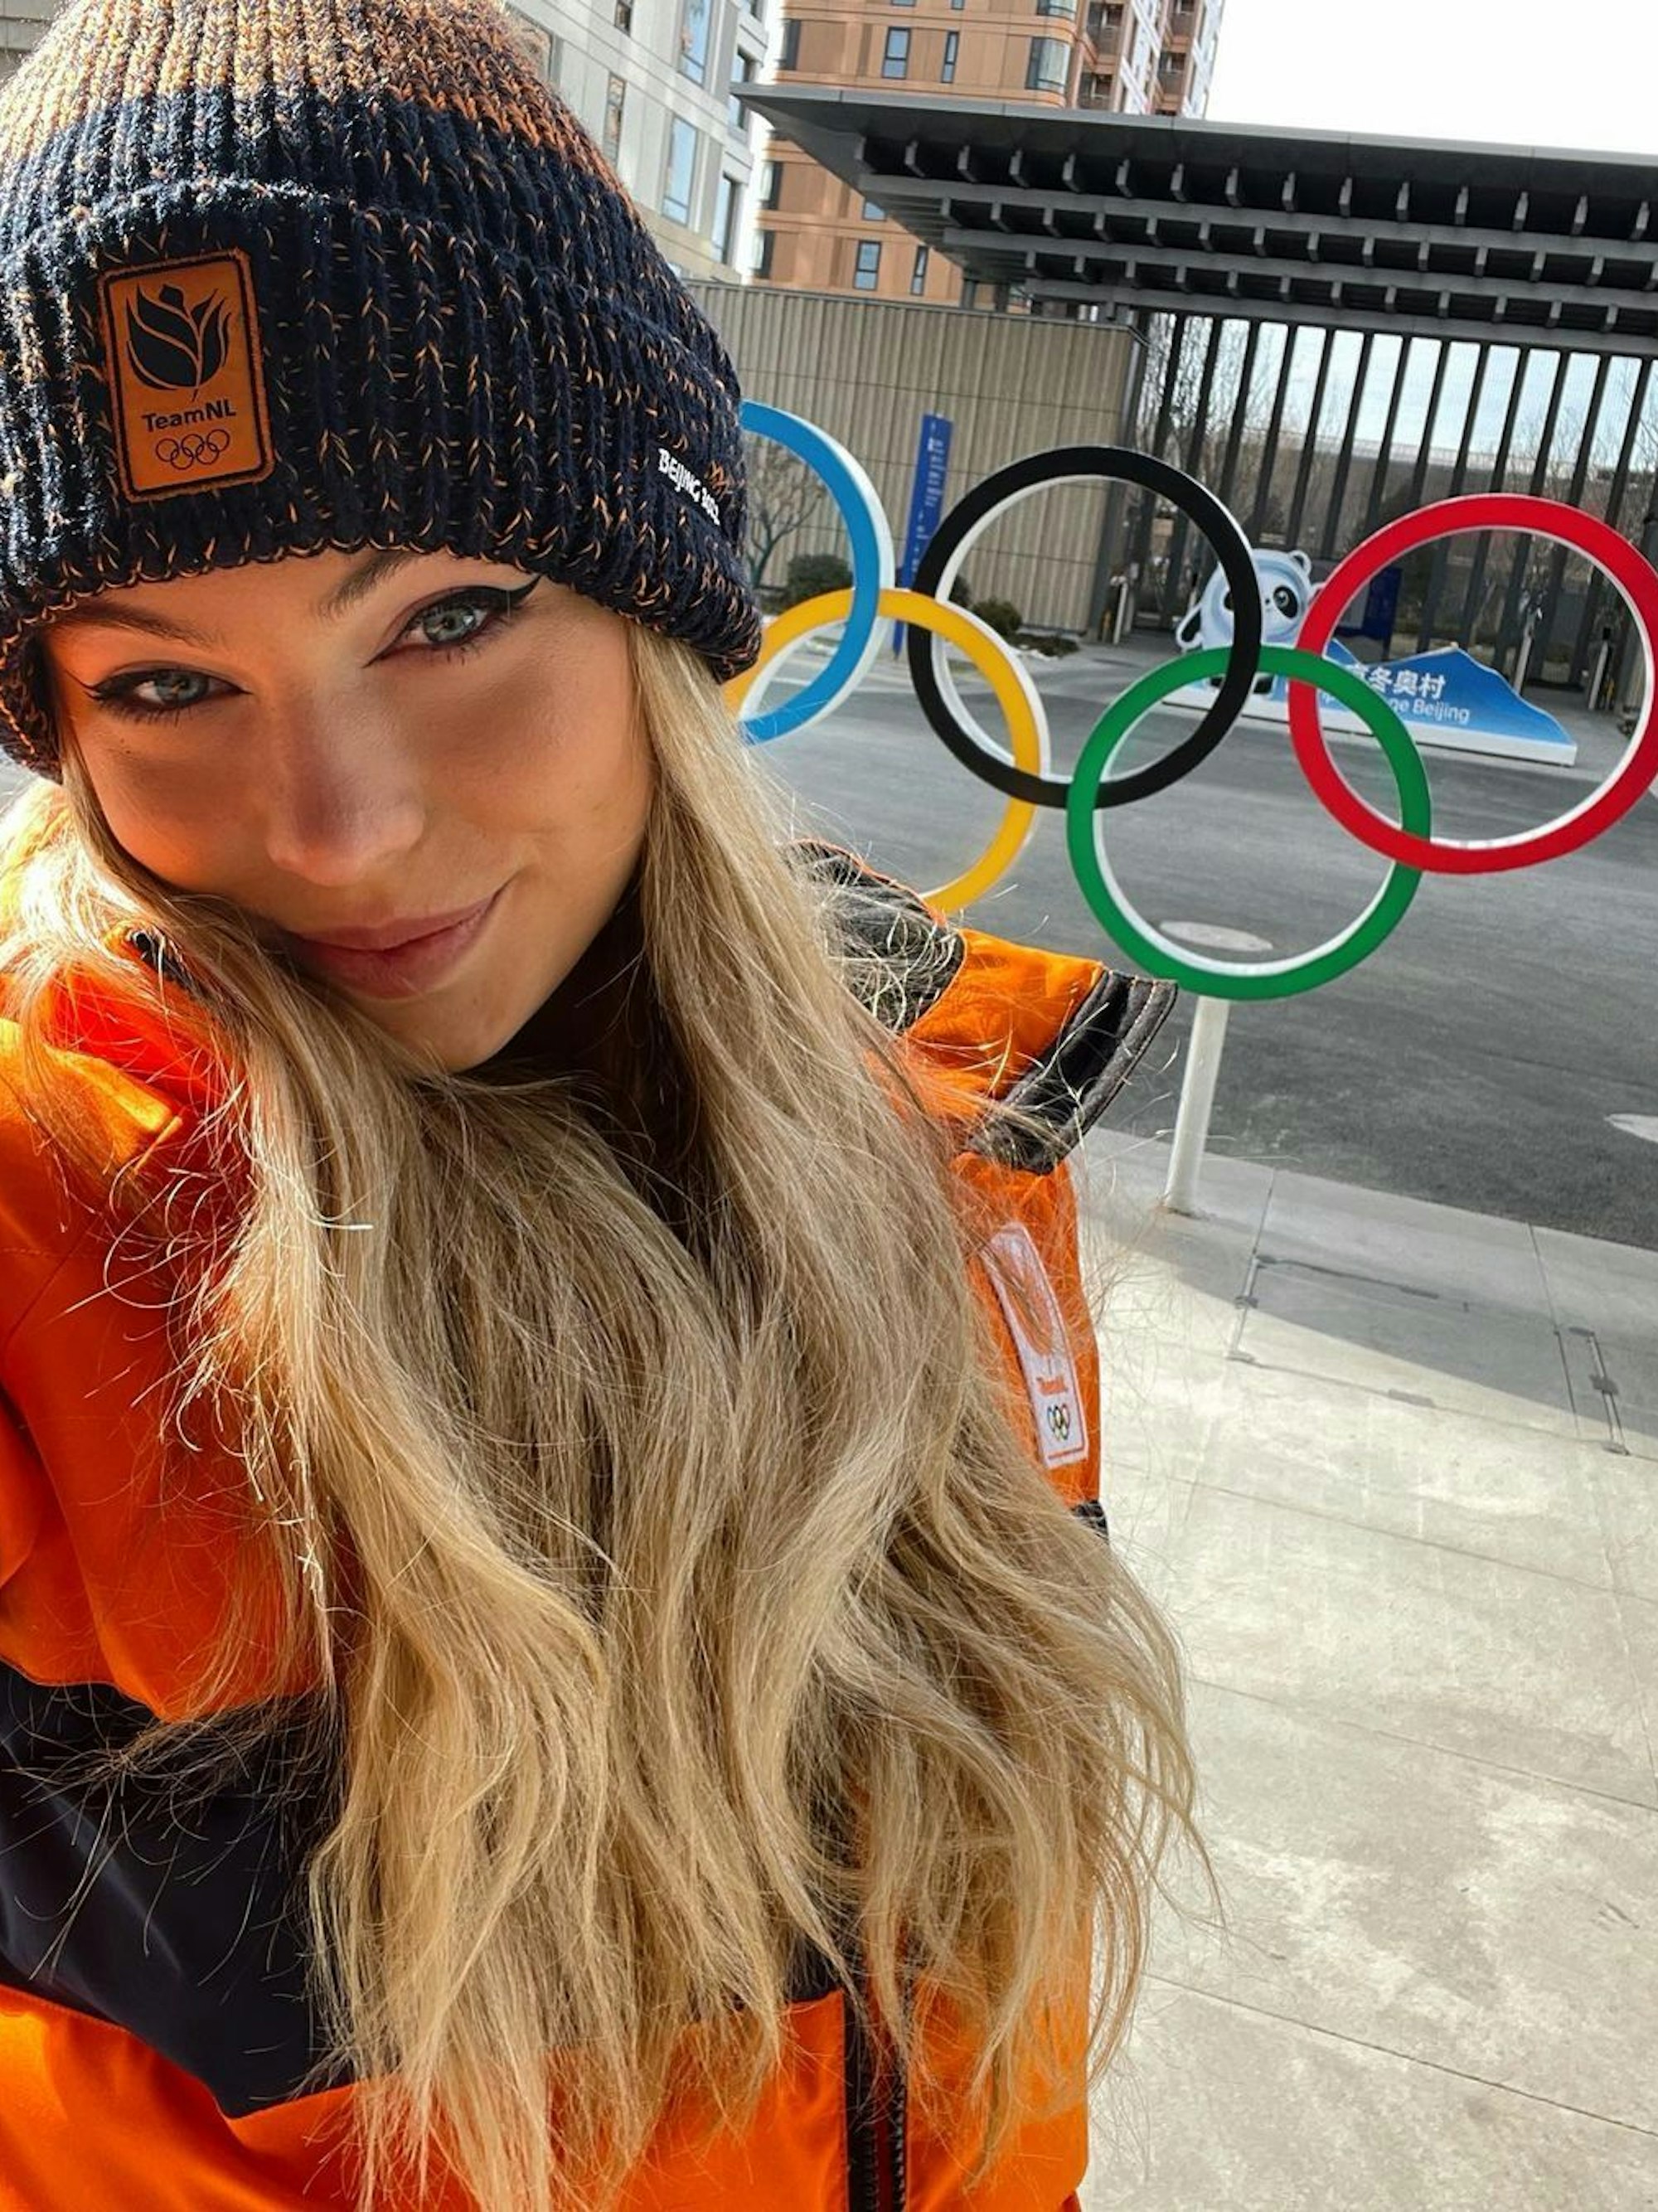 Eisschnelllauf-Star Jutta Leerdam ist in China angekommen. Die Niederländerin veröffentlichte dieses Selfie vor den Olympischen Ringen am Freitag (28. Januar 2022) auf ihrem Instagram-Kanal. 

Foto am 28.01.2022 von Anton Kostudis von instagram.com/juttaleerdam zum Zweck der Berichterstattung heruntergeladen.